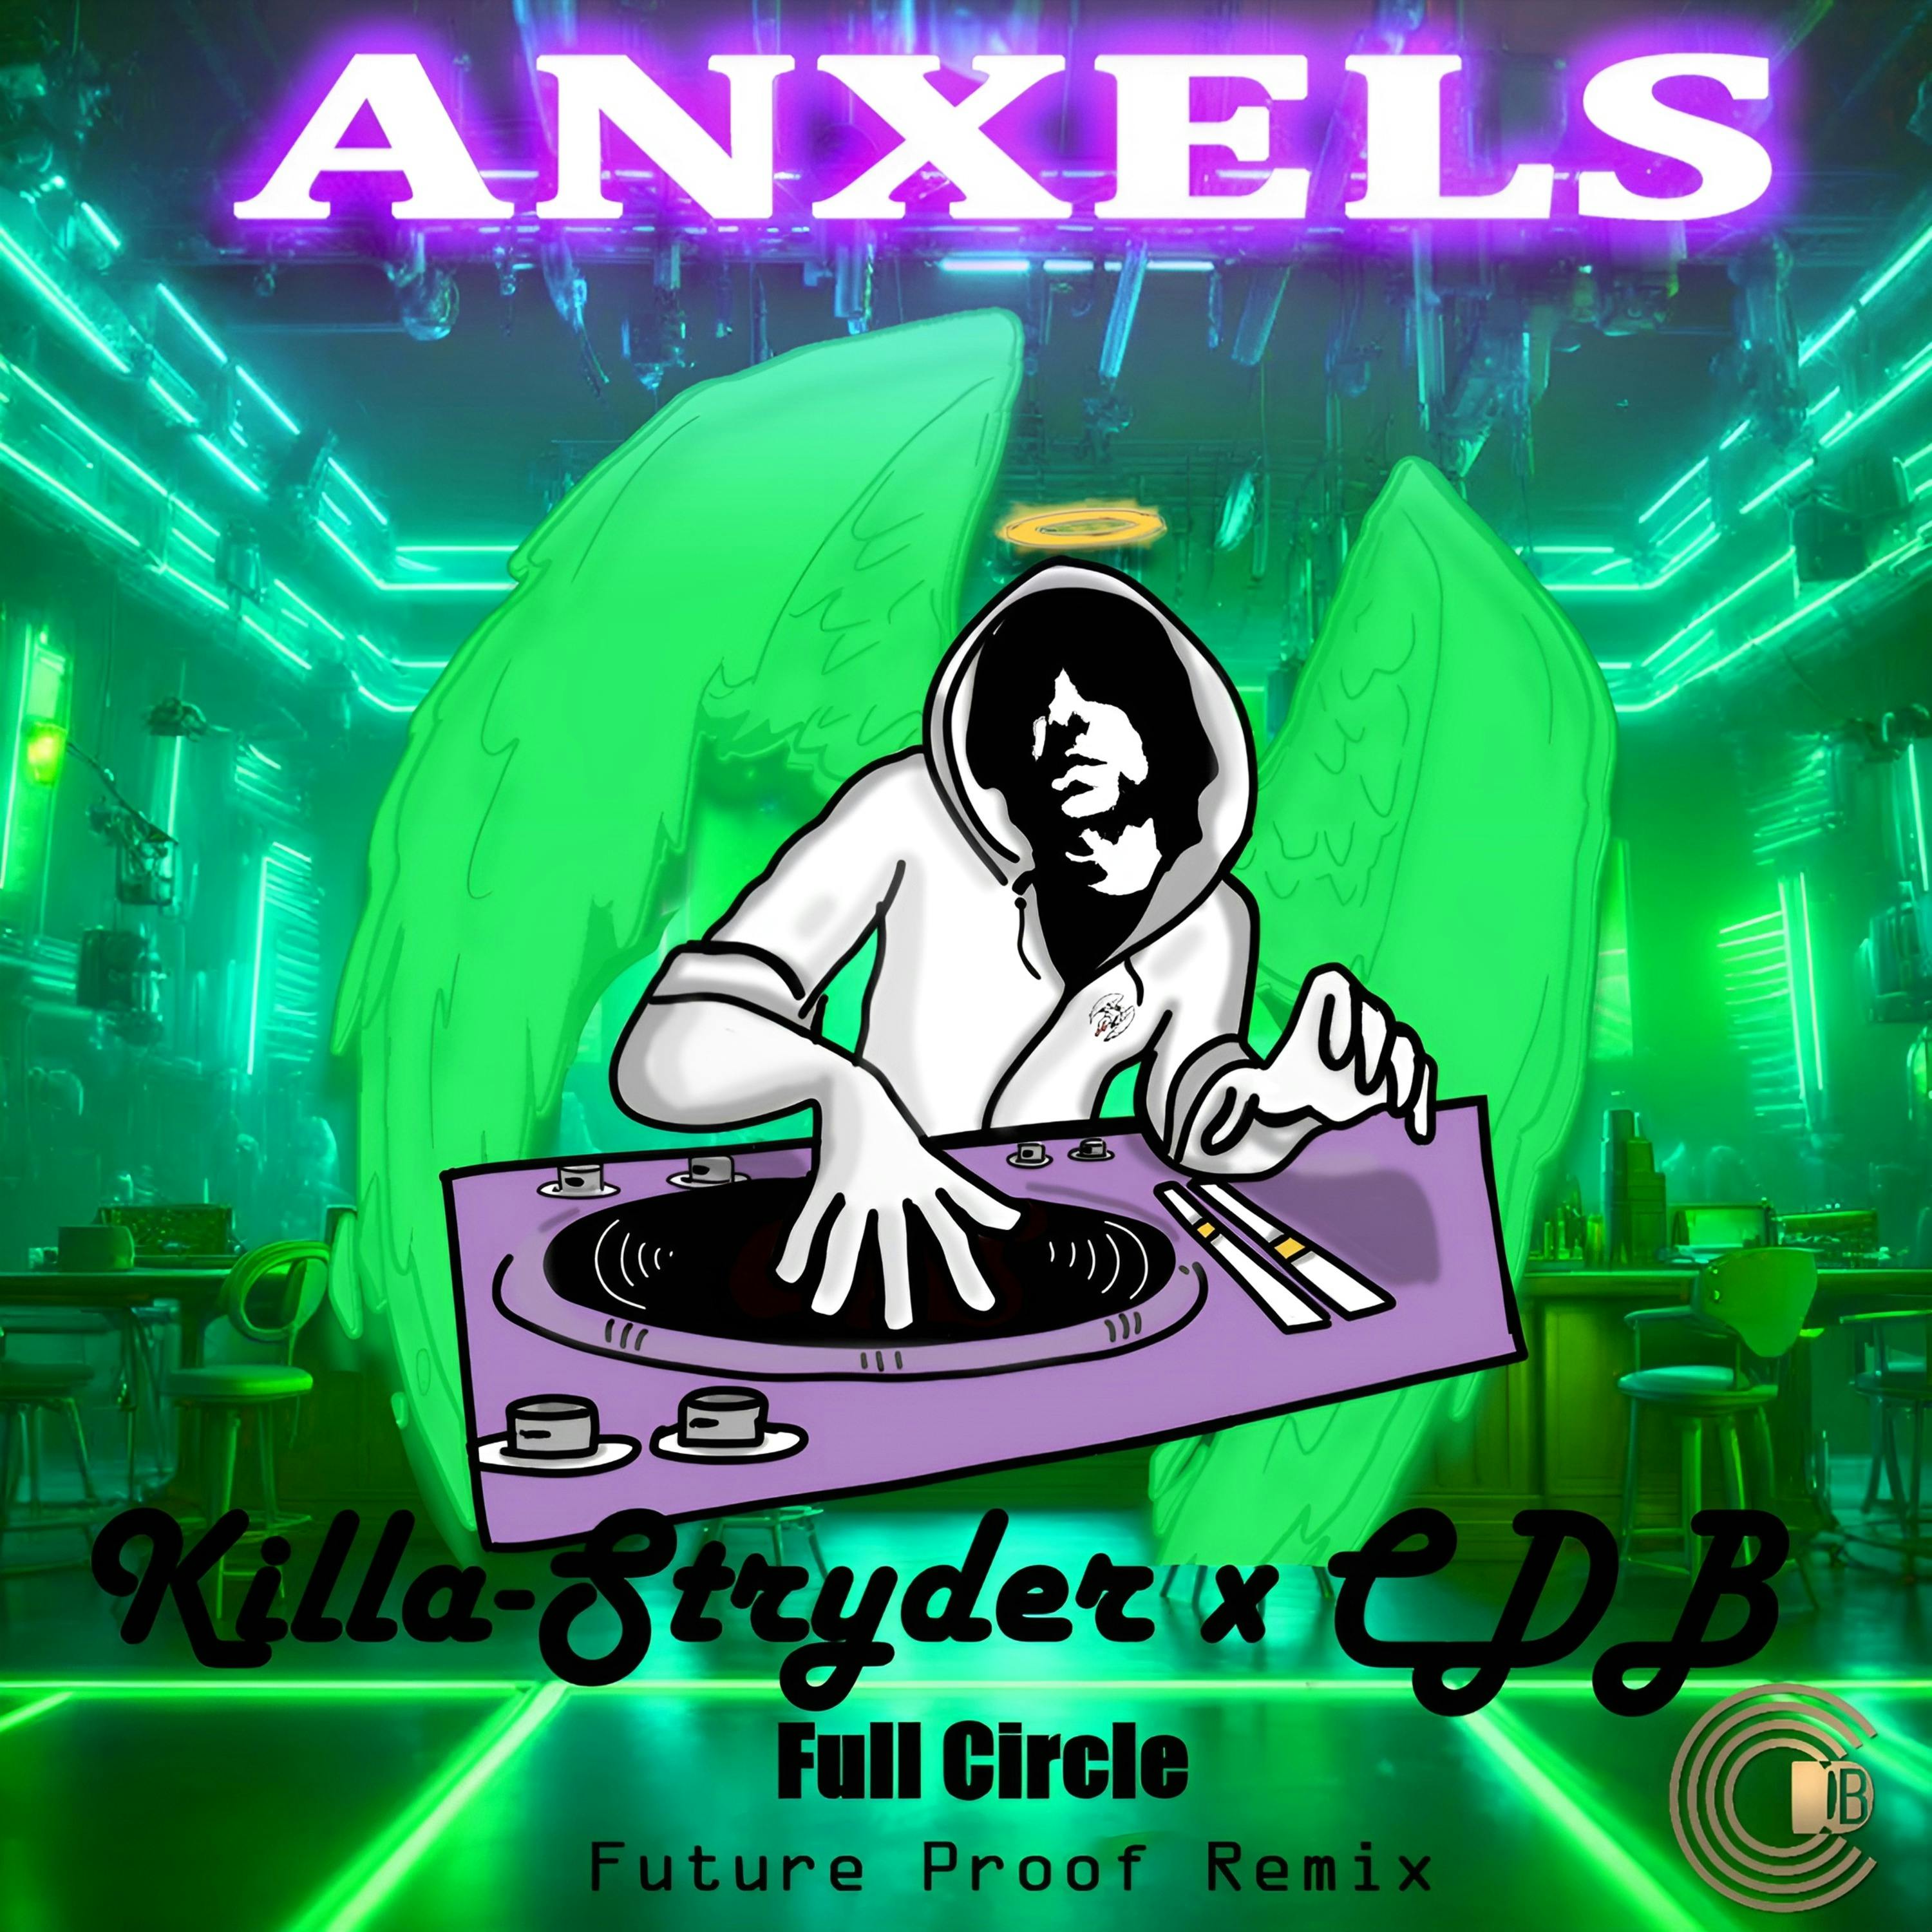 Full Circle Future Proof CDB remix